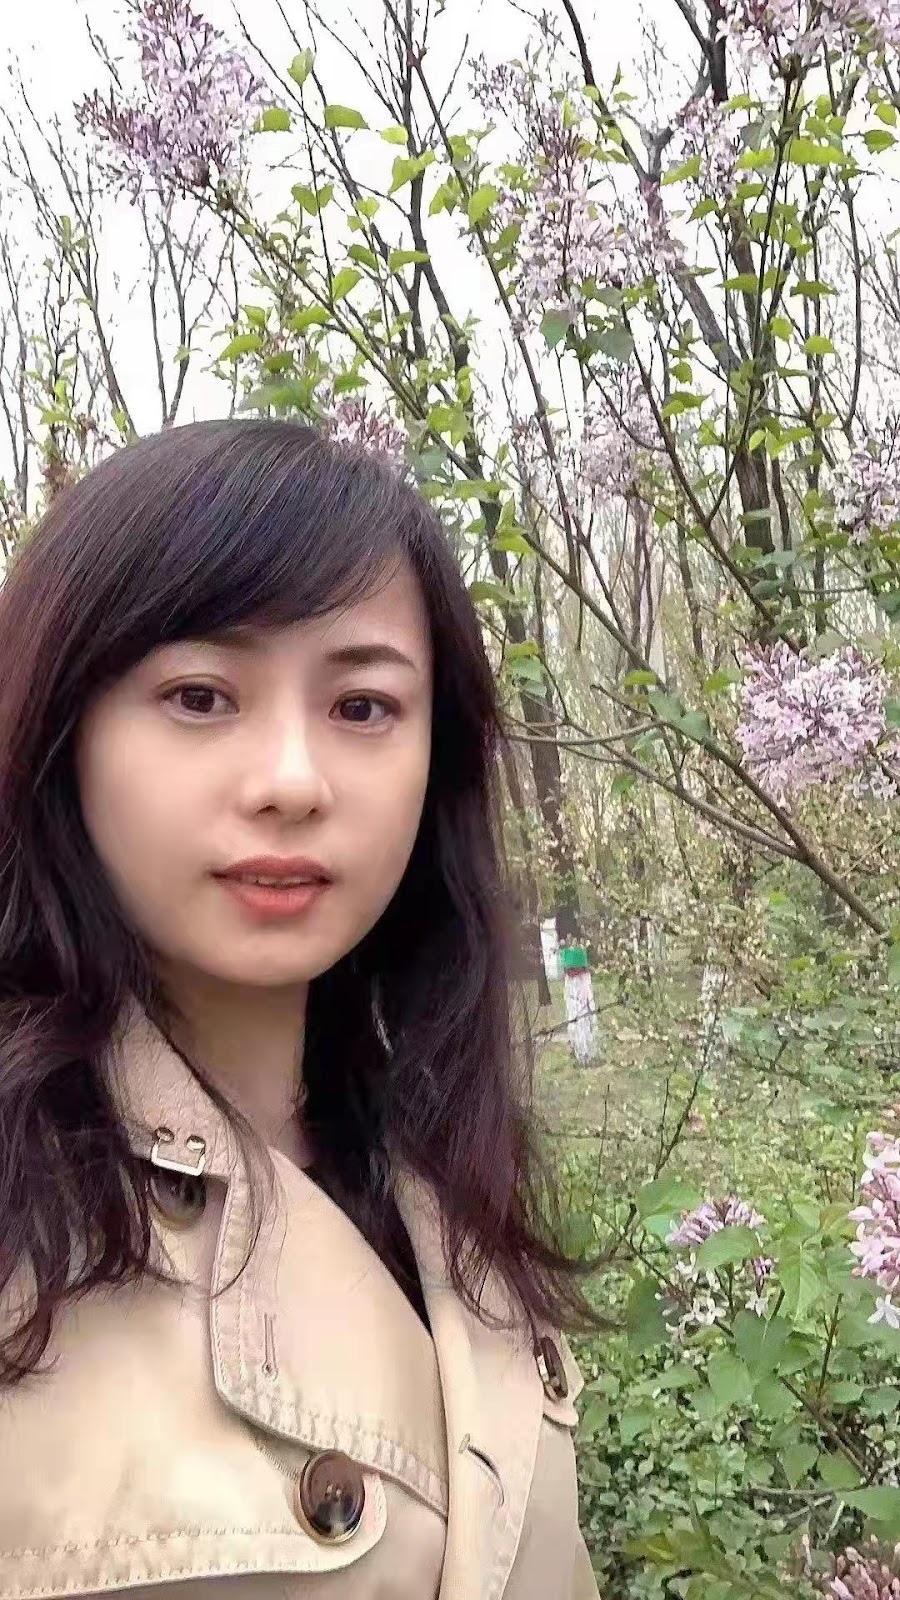 国際結婚したい中国人女性CN-0922さんのご紹介